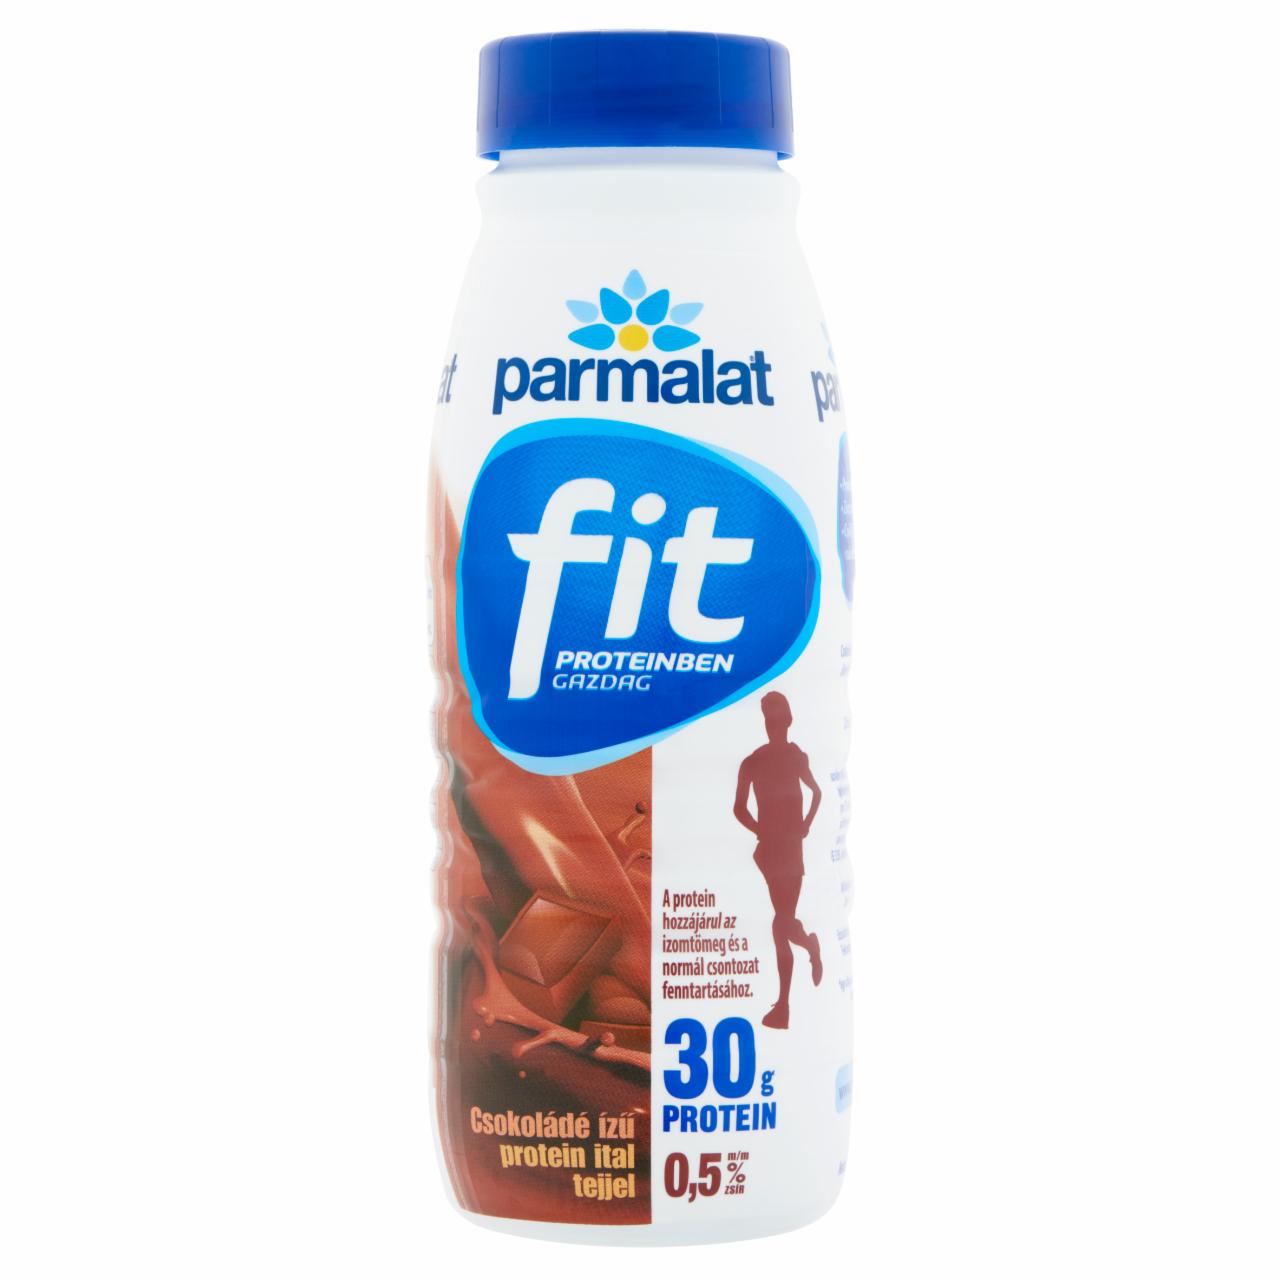 Képek - Parmalat Fit csokoládé ízű protein ital tejjel 0,5 l